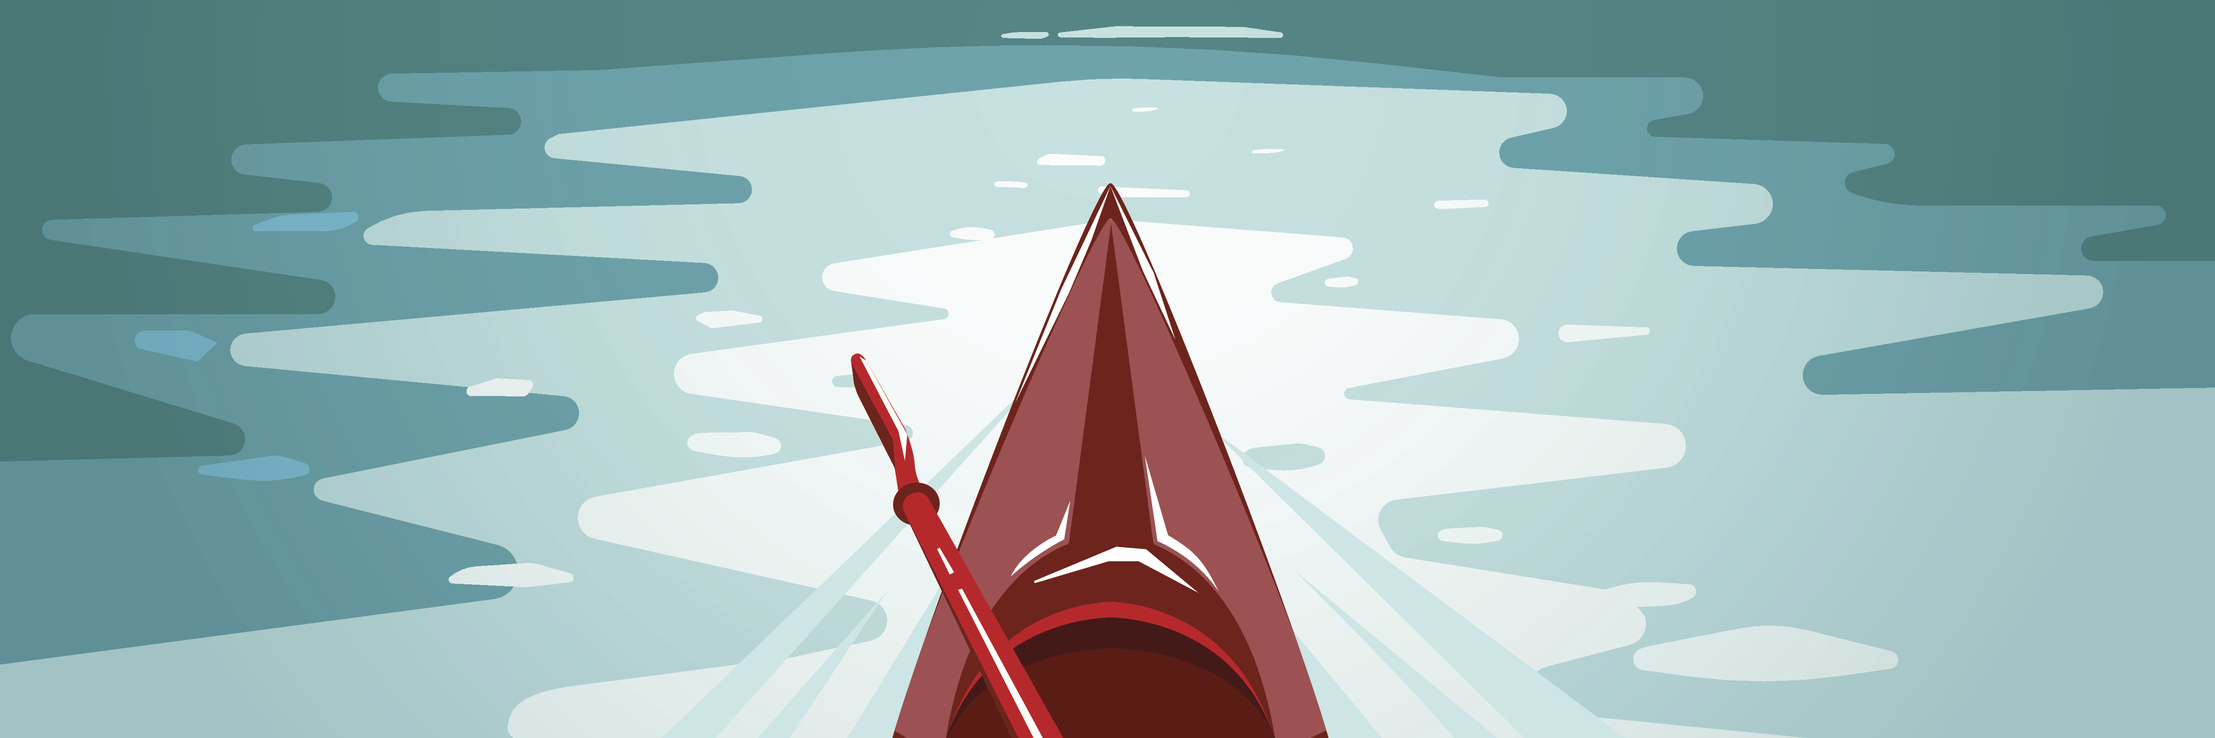 Flat style illustration. Fun outdoor journey kayak